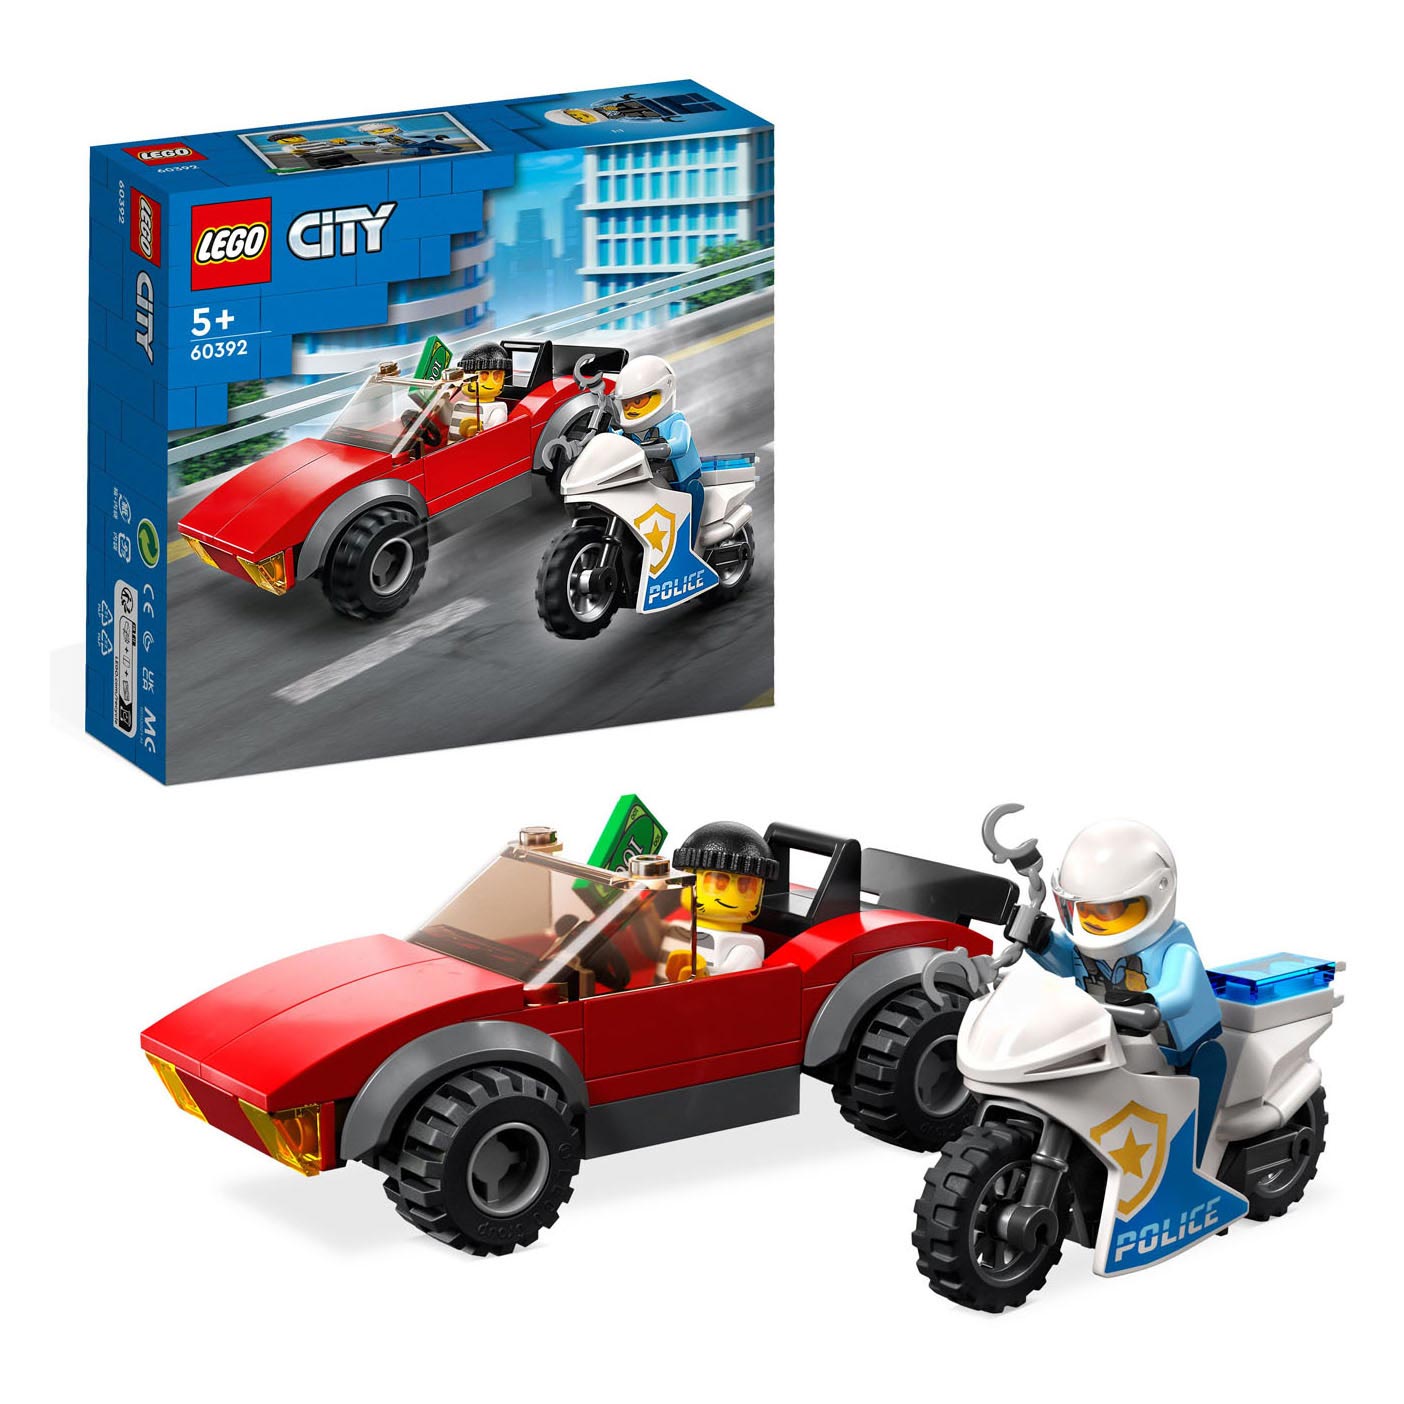 LEGO City 60392 Verfolgungsjagd auf einem Polizeimotorrad